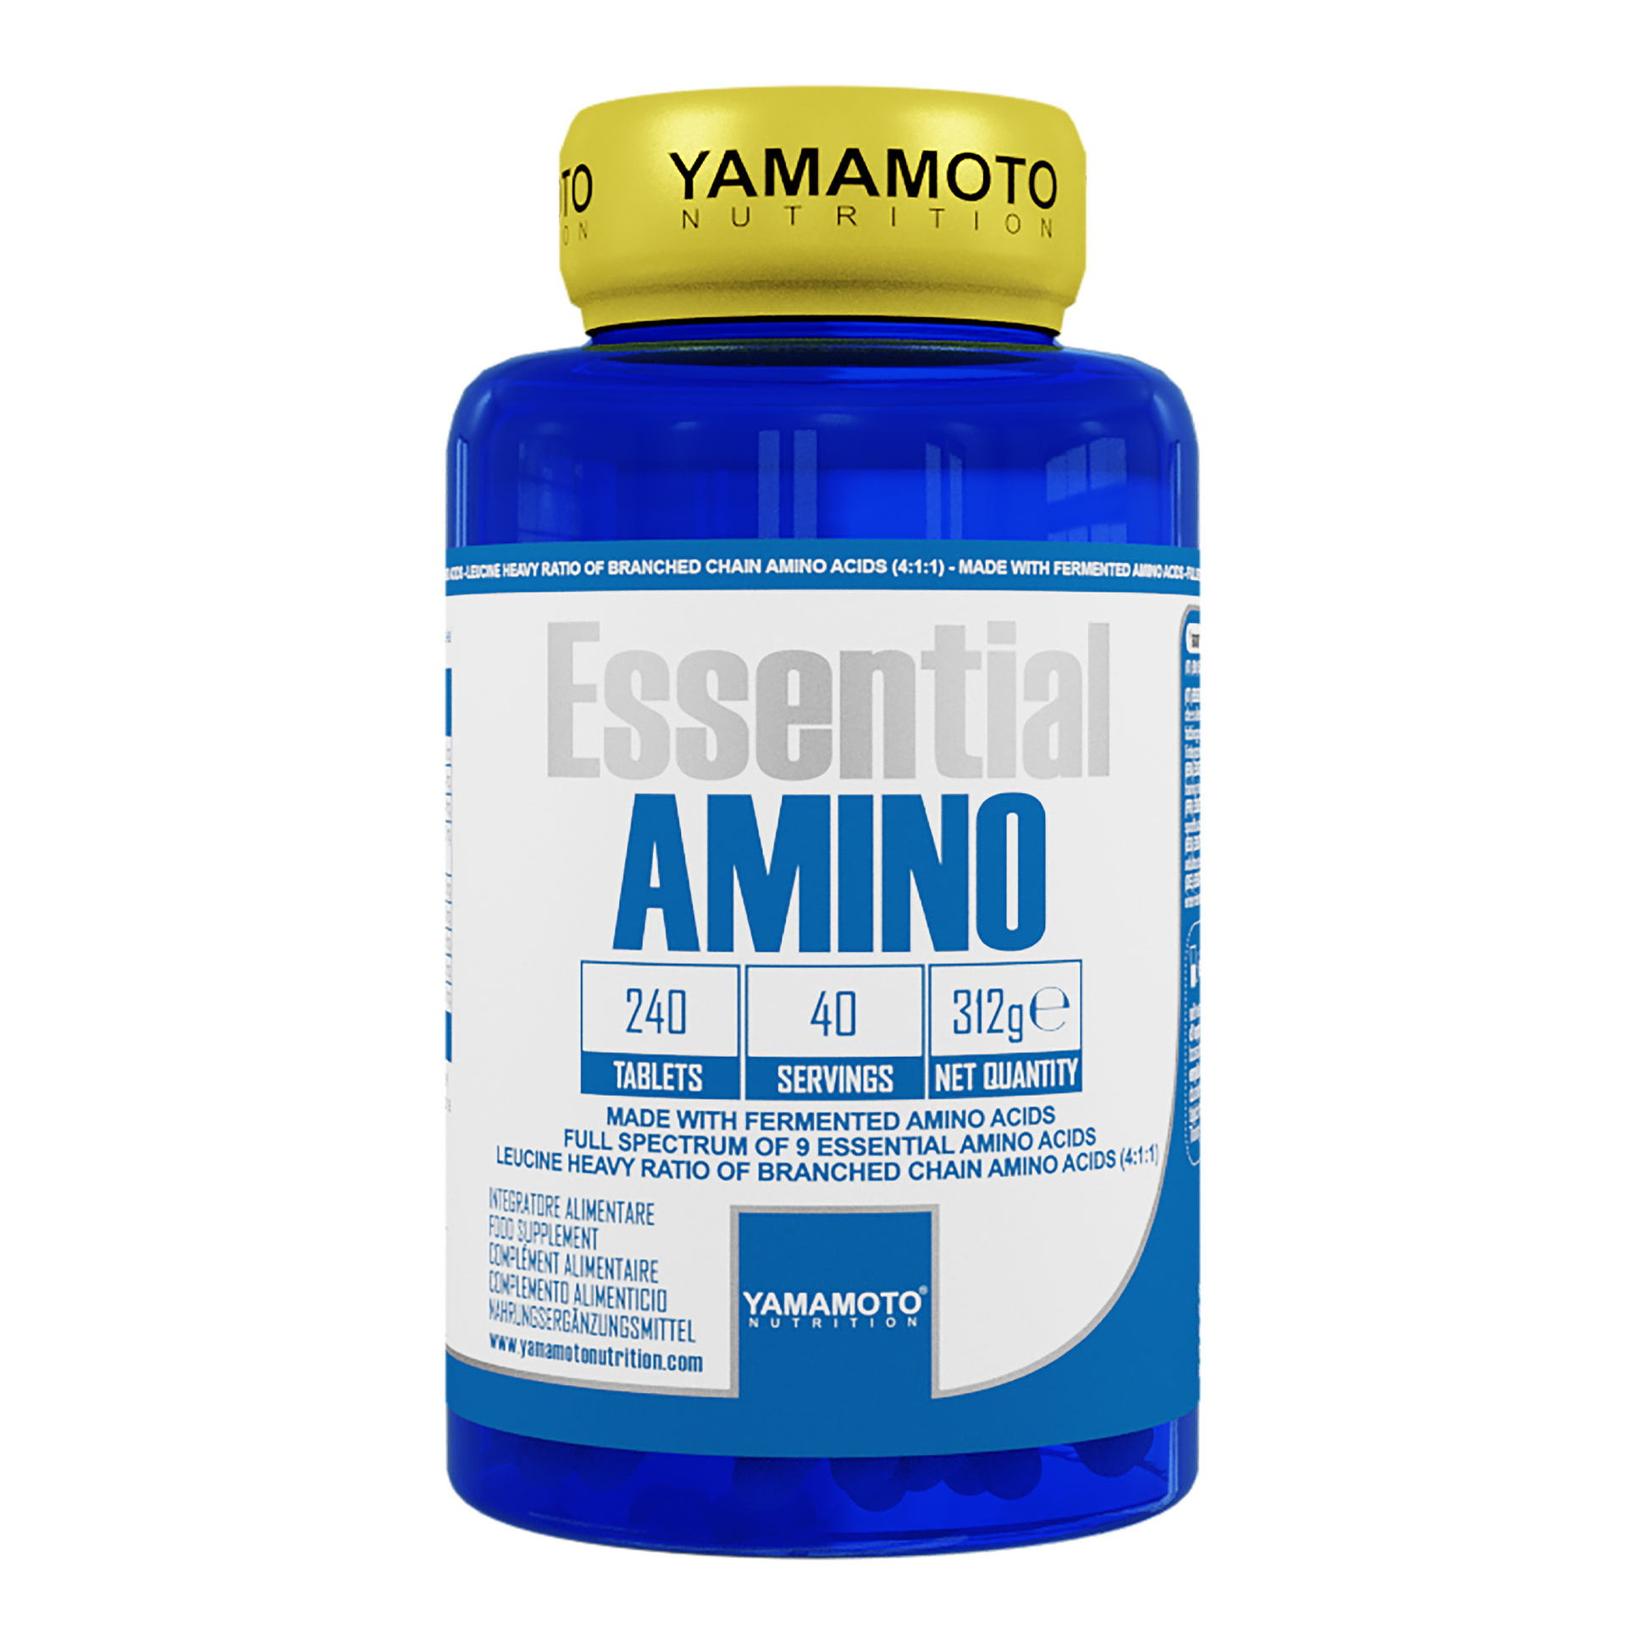 YAMAMOTO Essential Amino 240tab